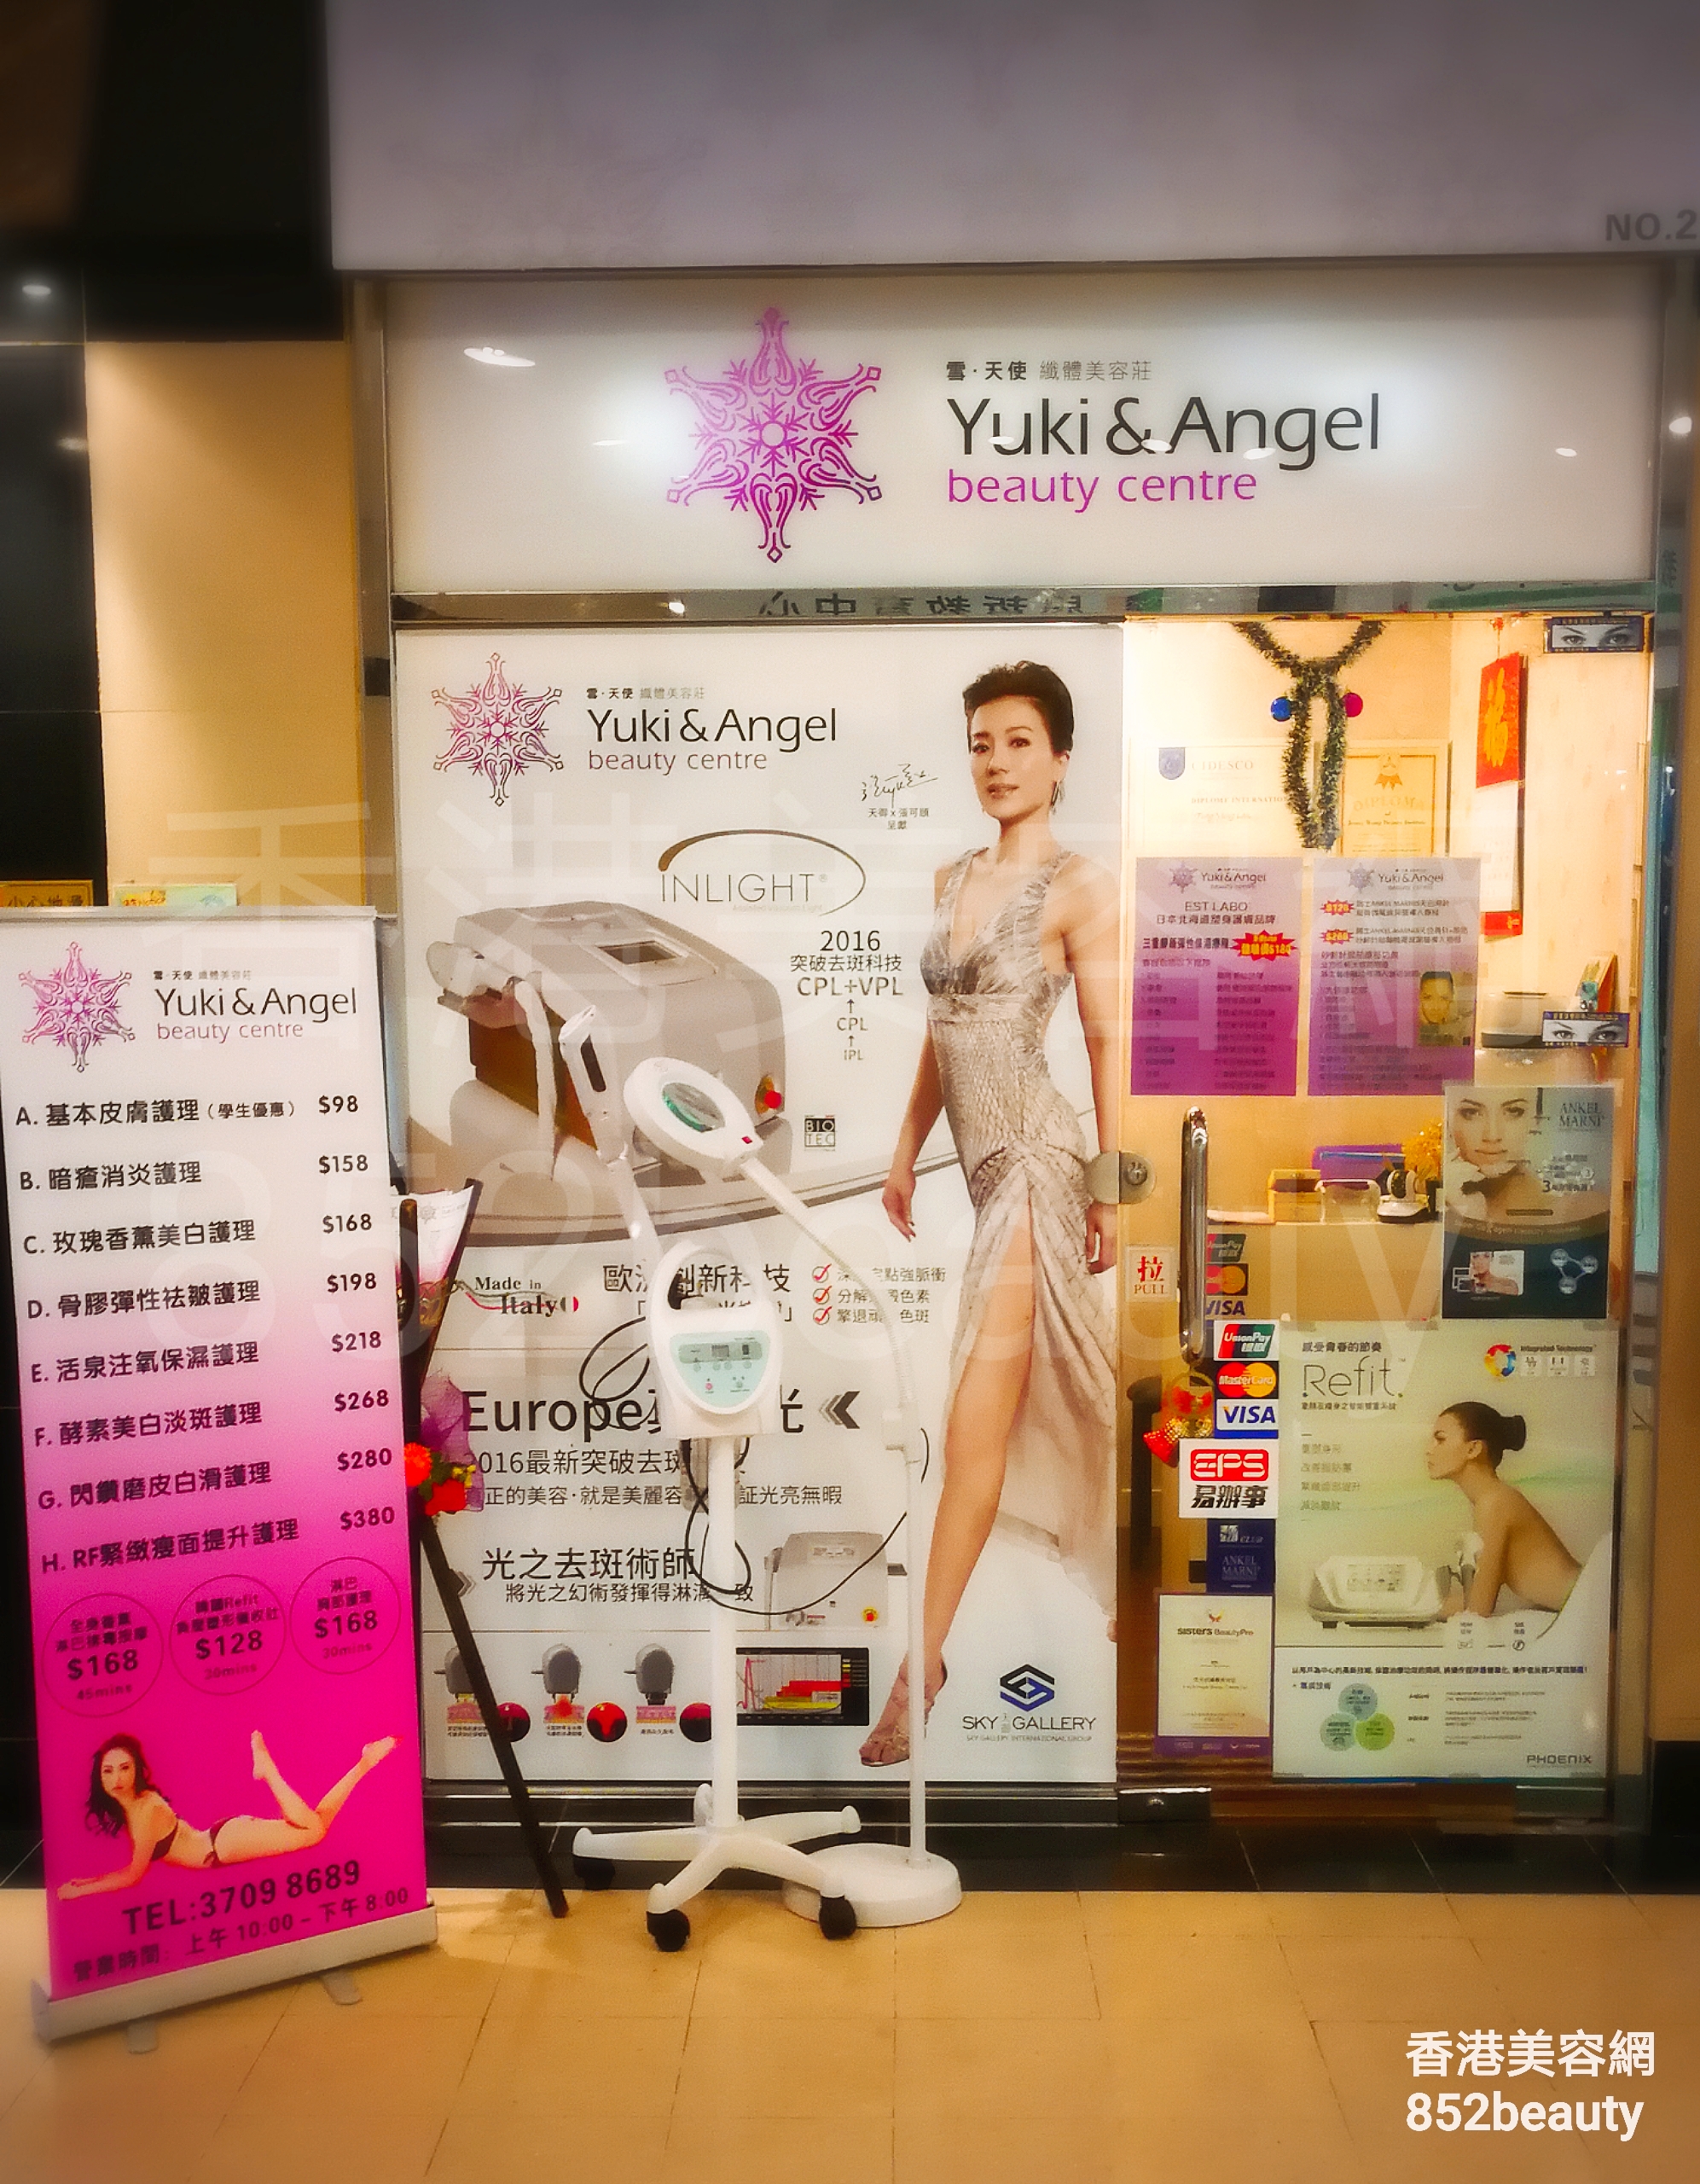 脱毛: Yuki & Angel beauty centre